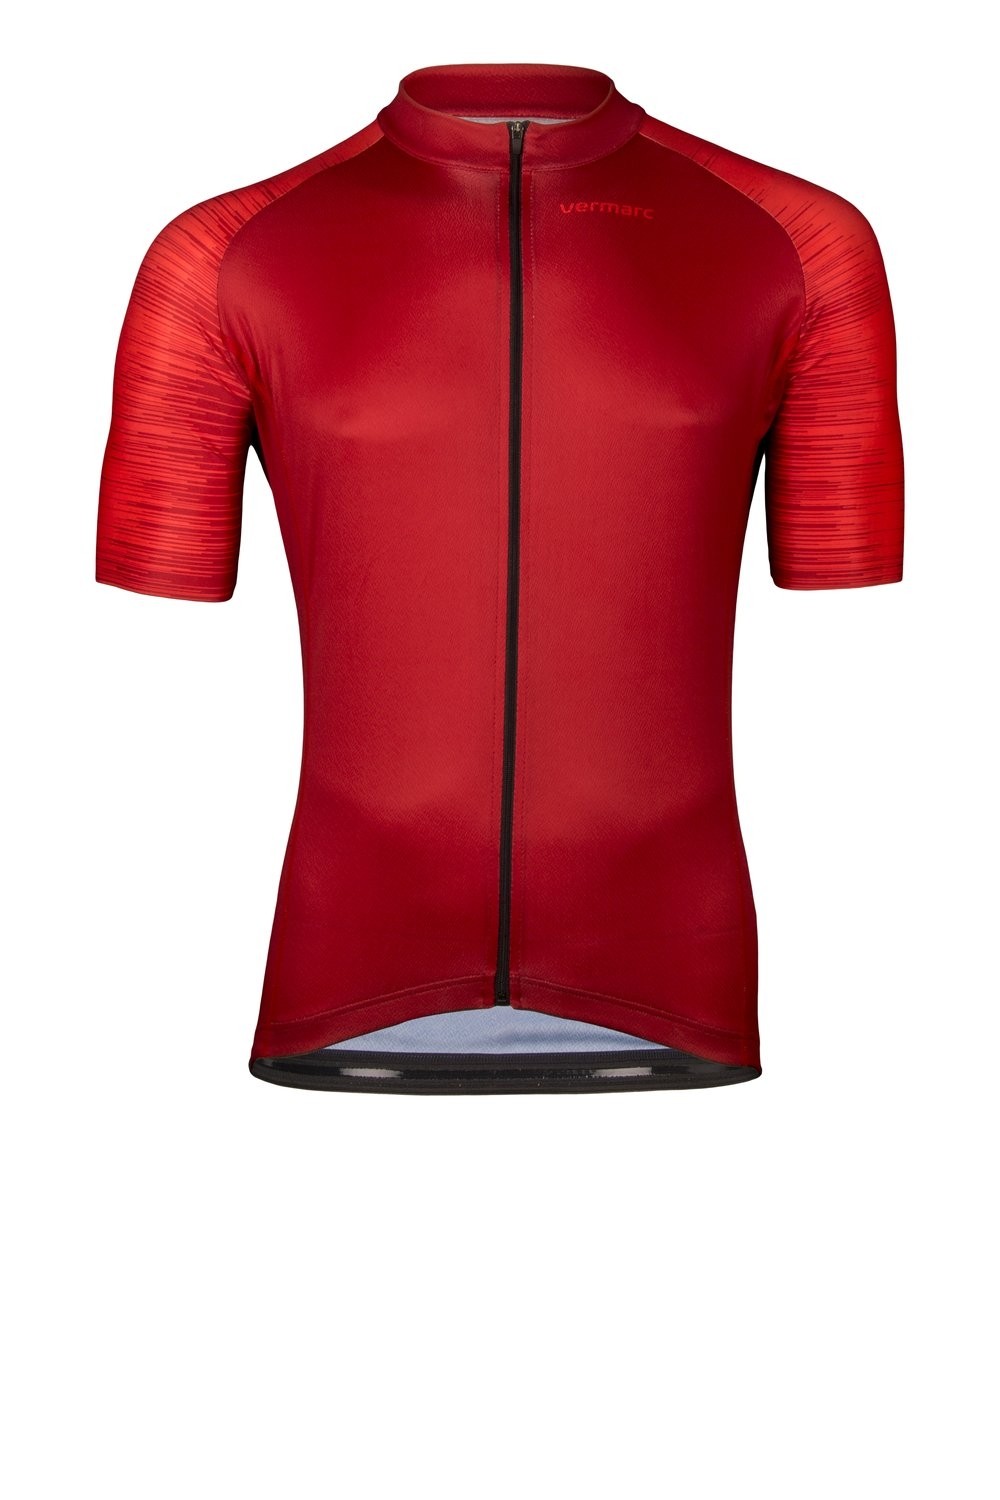 Vermarc seiso sp.l aero maillot de cyclisme manches courtes bordeaux rouge